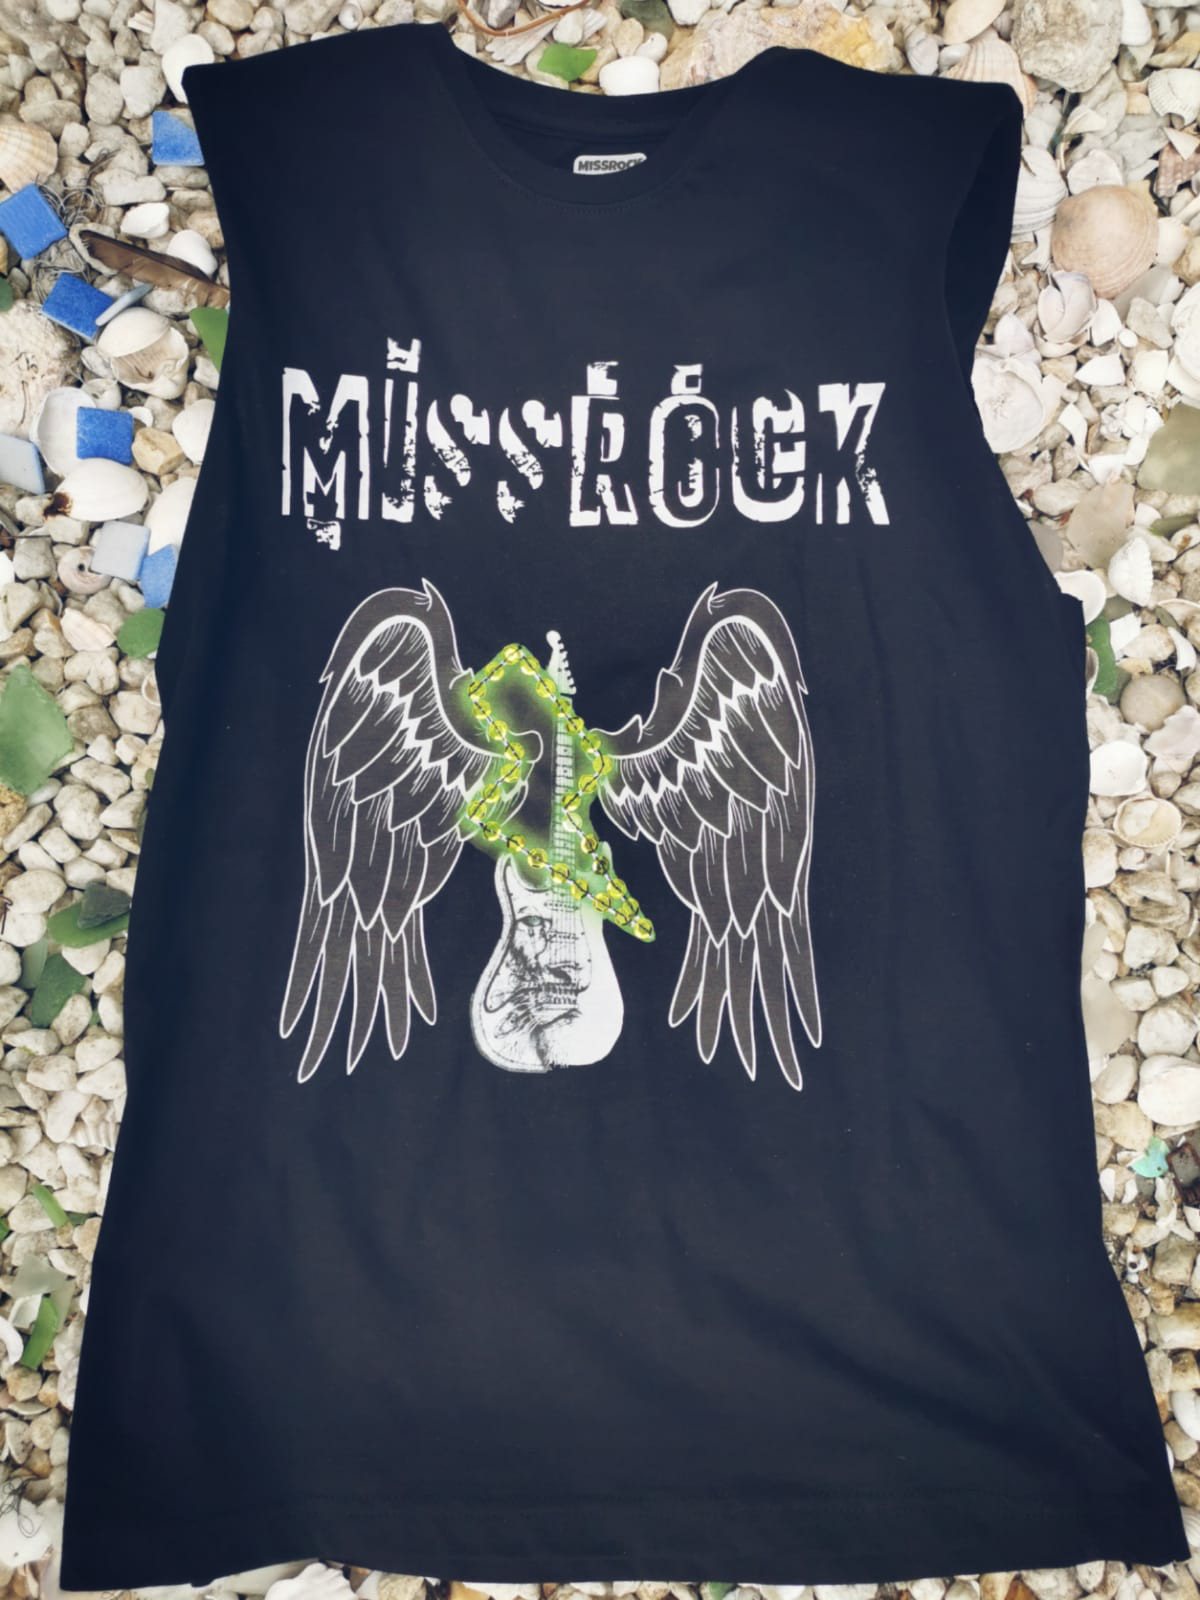 cubrir Objeción rosario Camiseta con hombreras MISSROCK - MissRock, Camisetas Rockeras